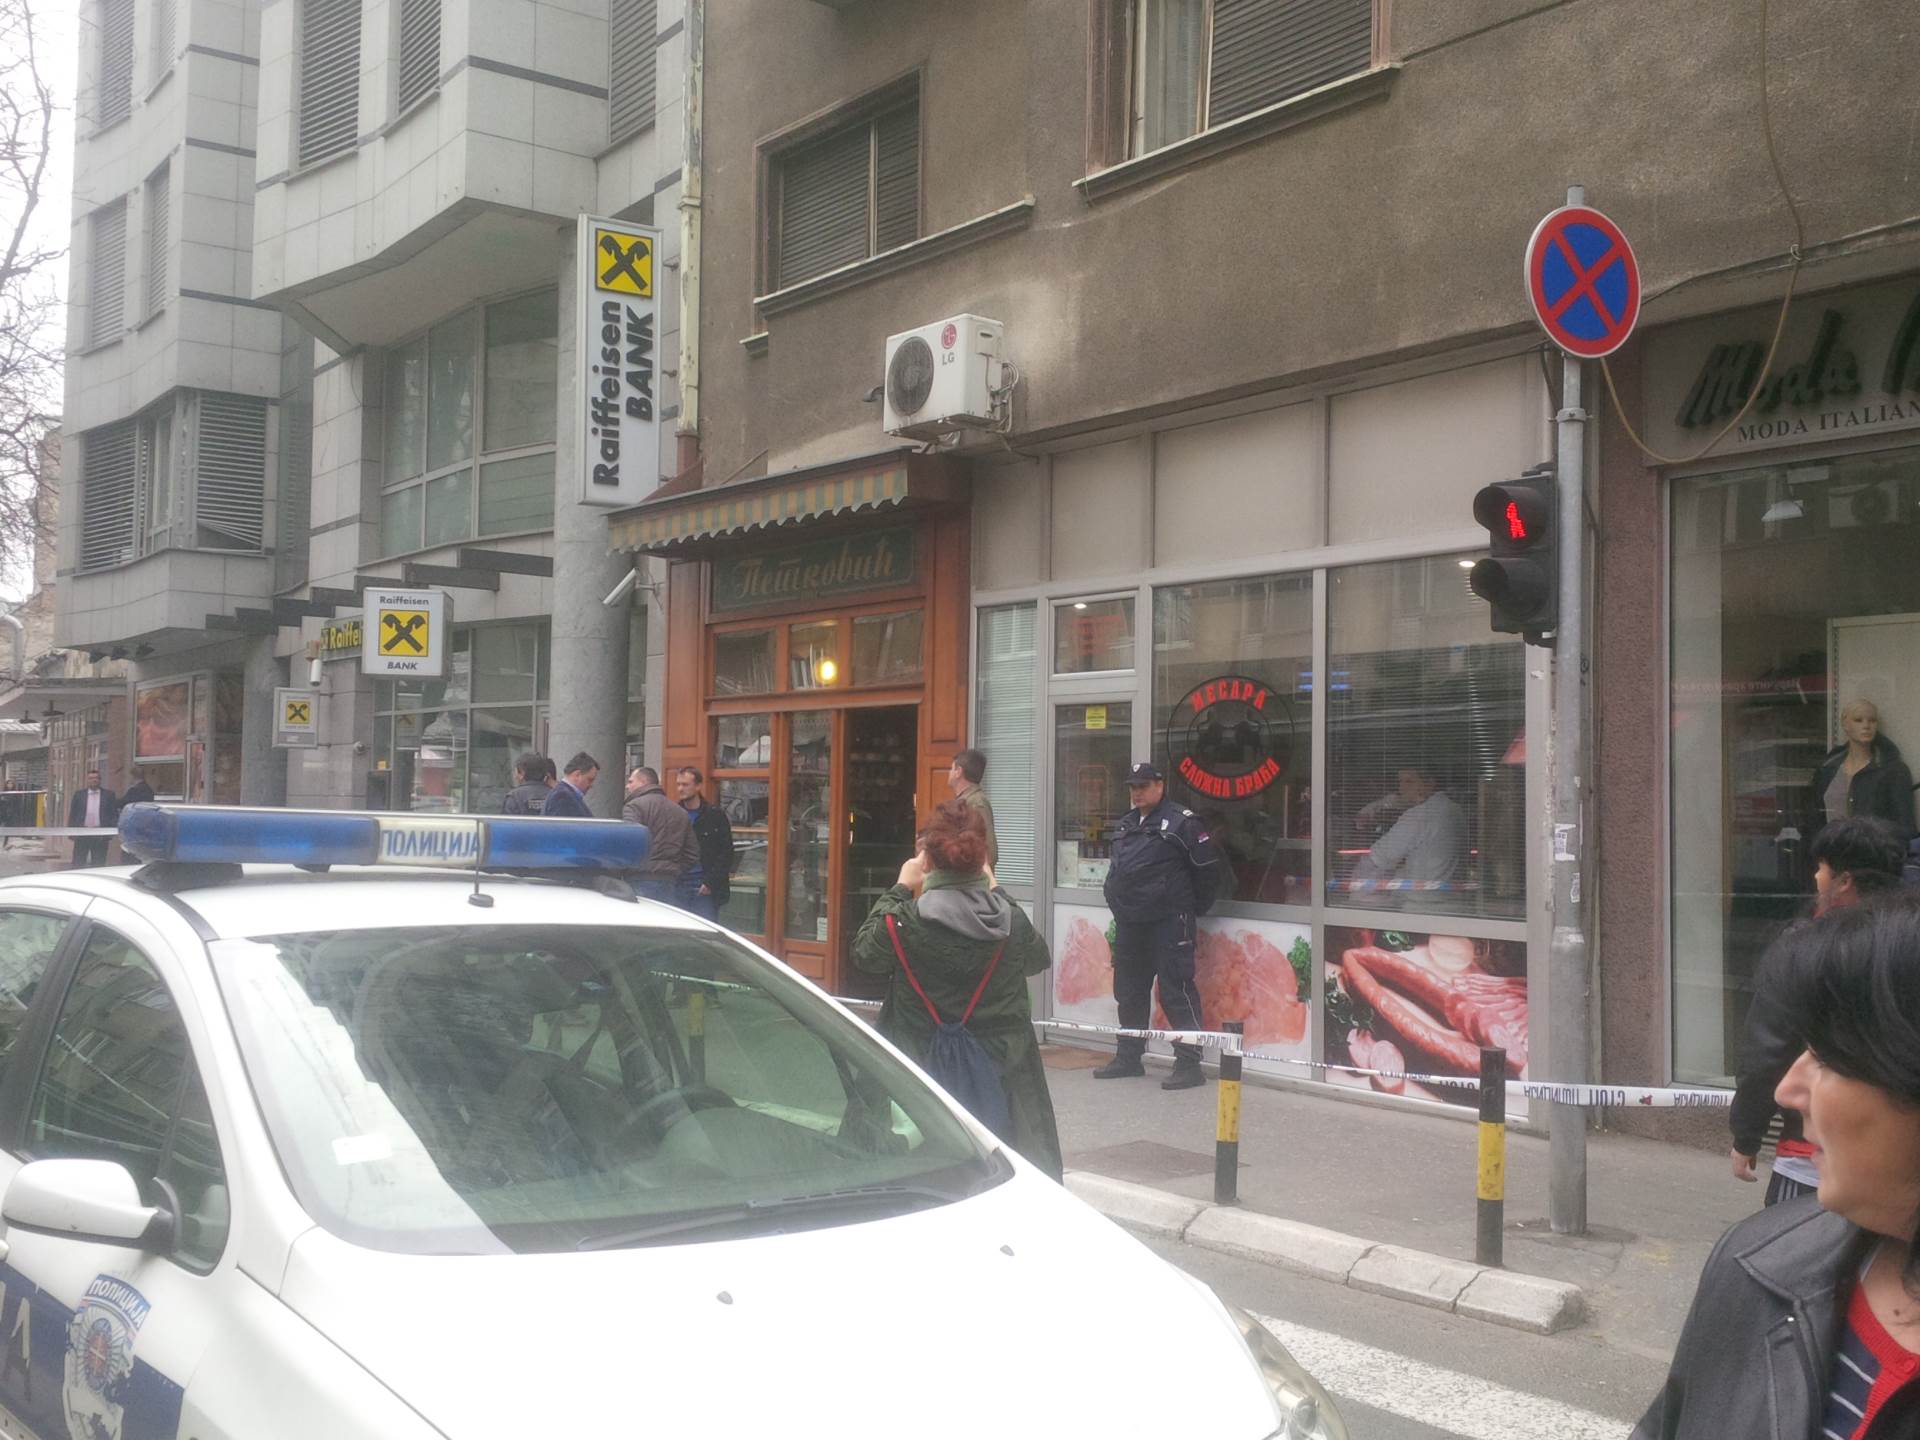 Beograd: Razneo se bombom u poslastičarnici! FOTO